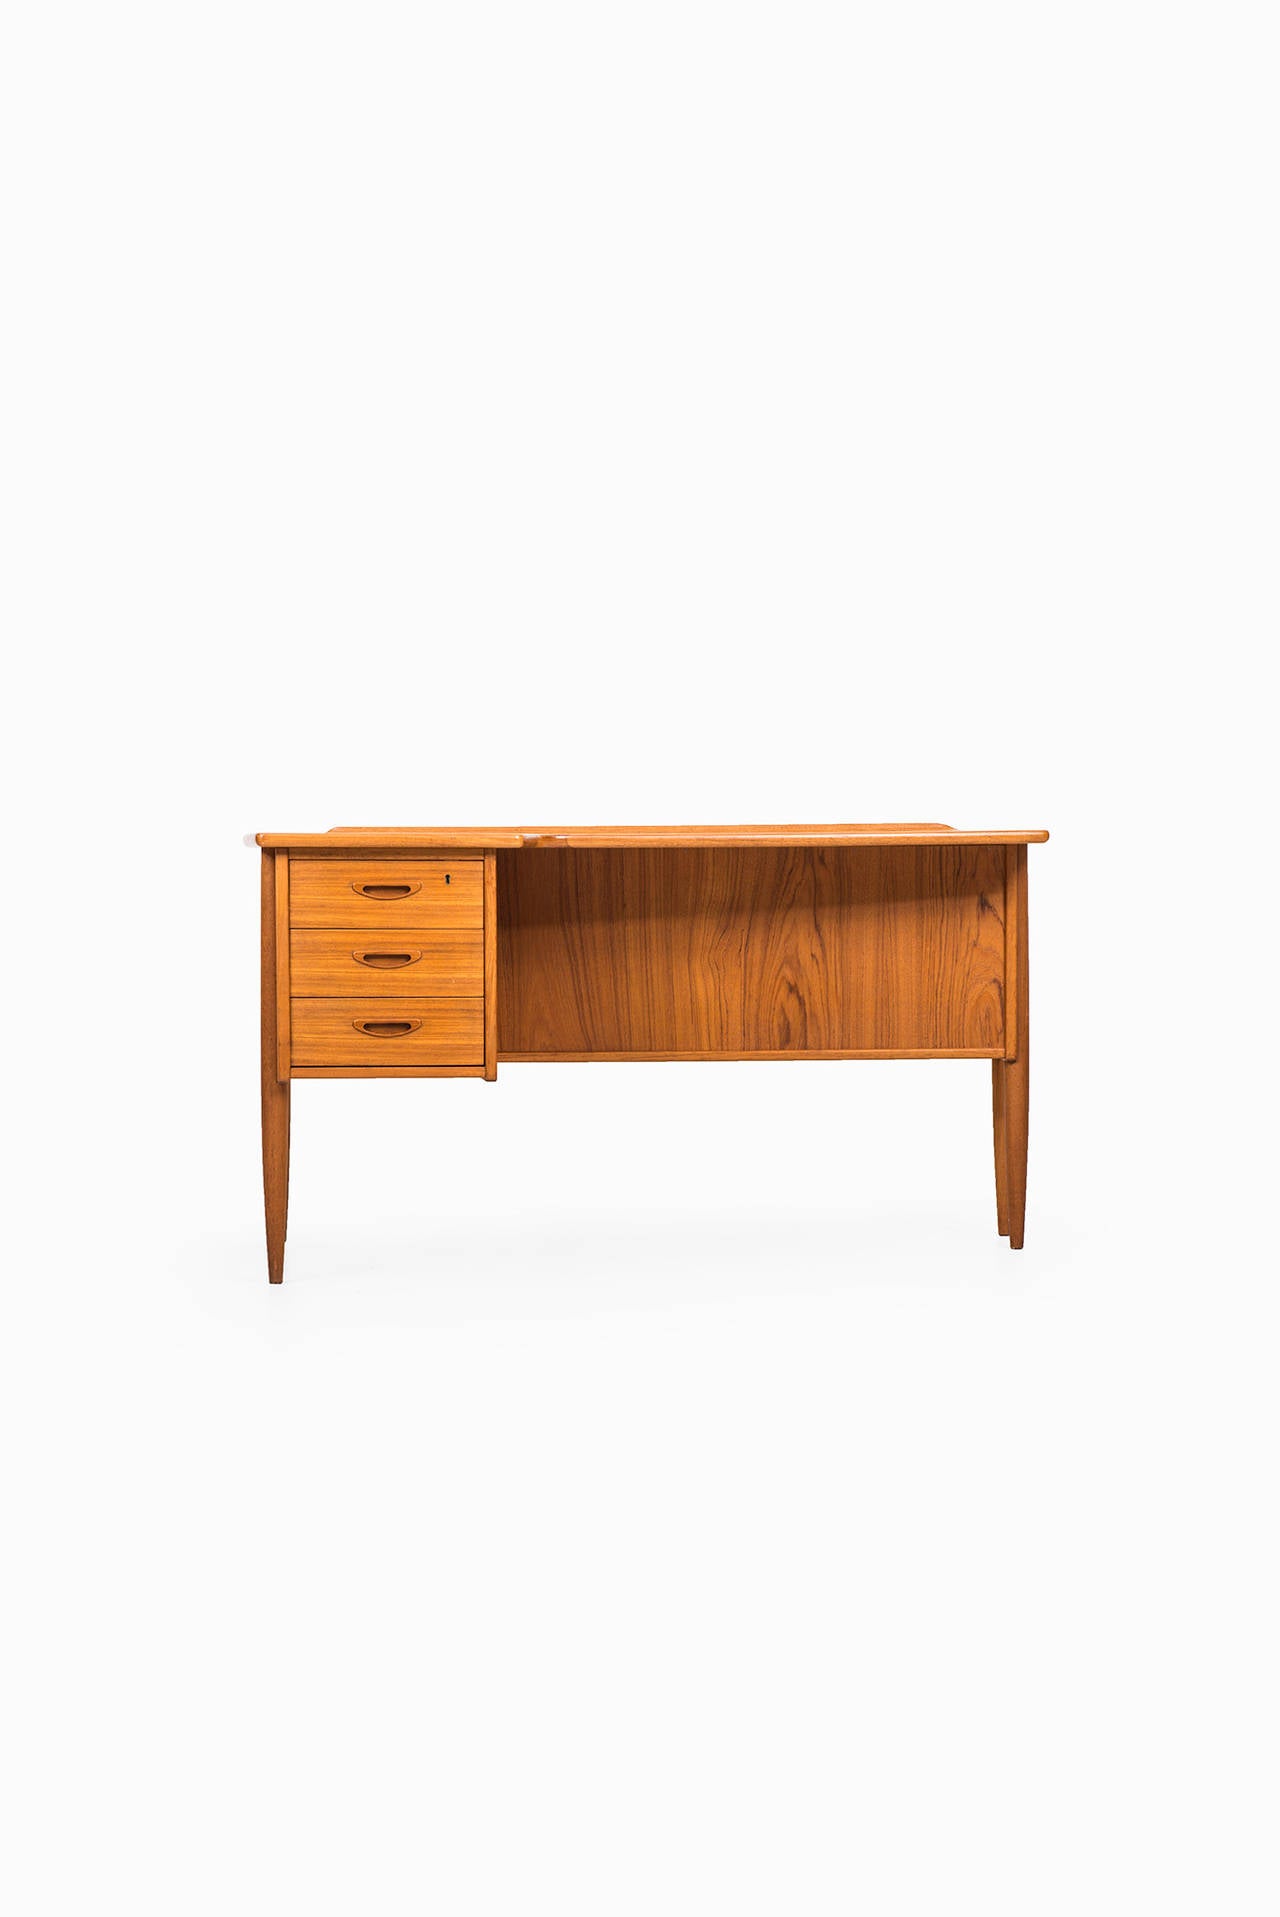 Göran Strand Desk Model A10 by Lelångs Möbelfabrik in Sweden 3